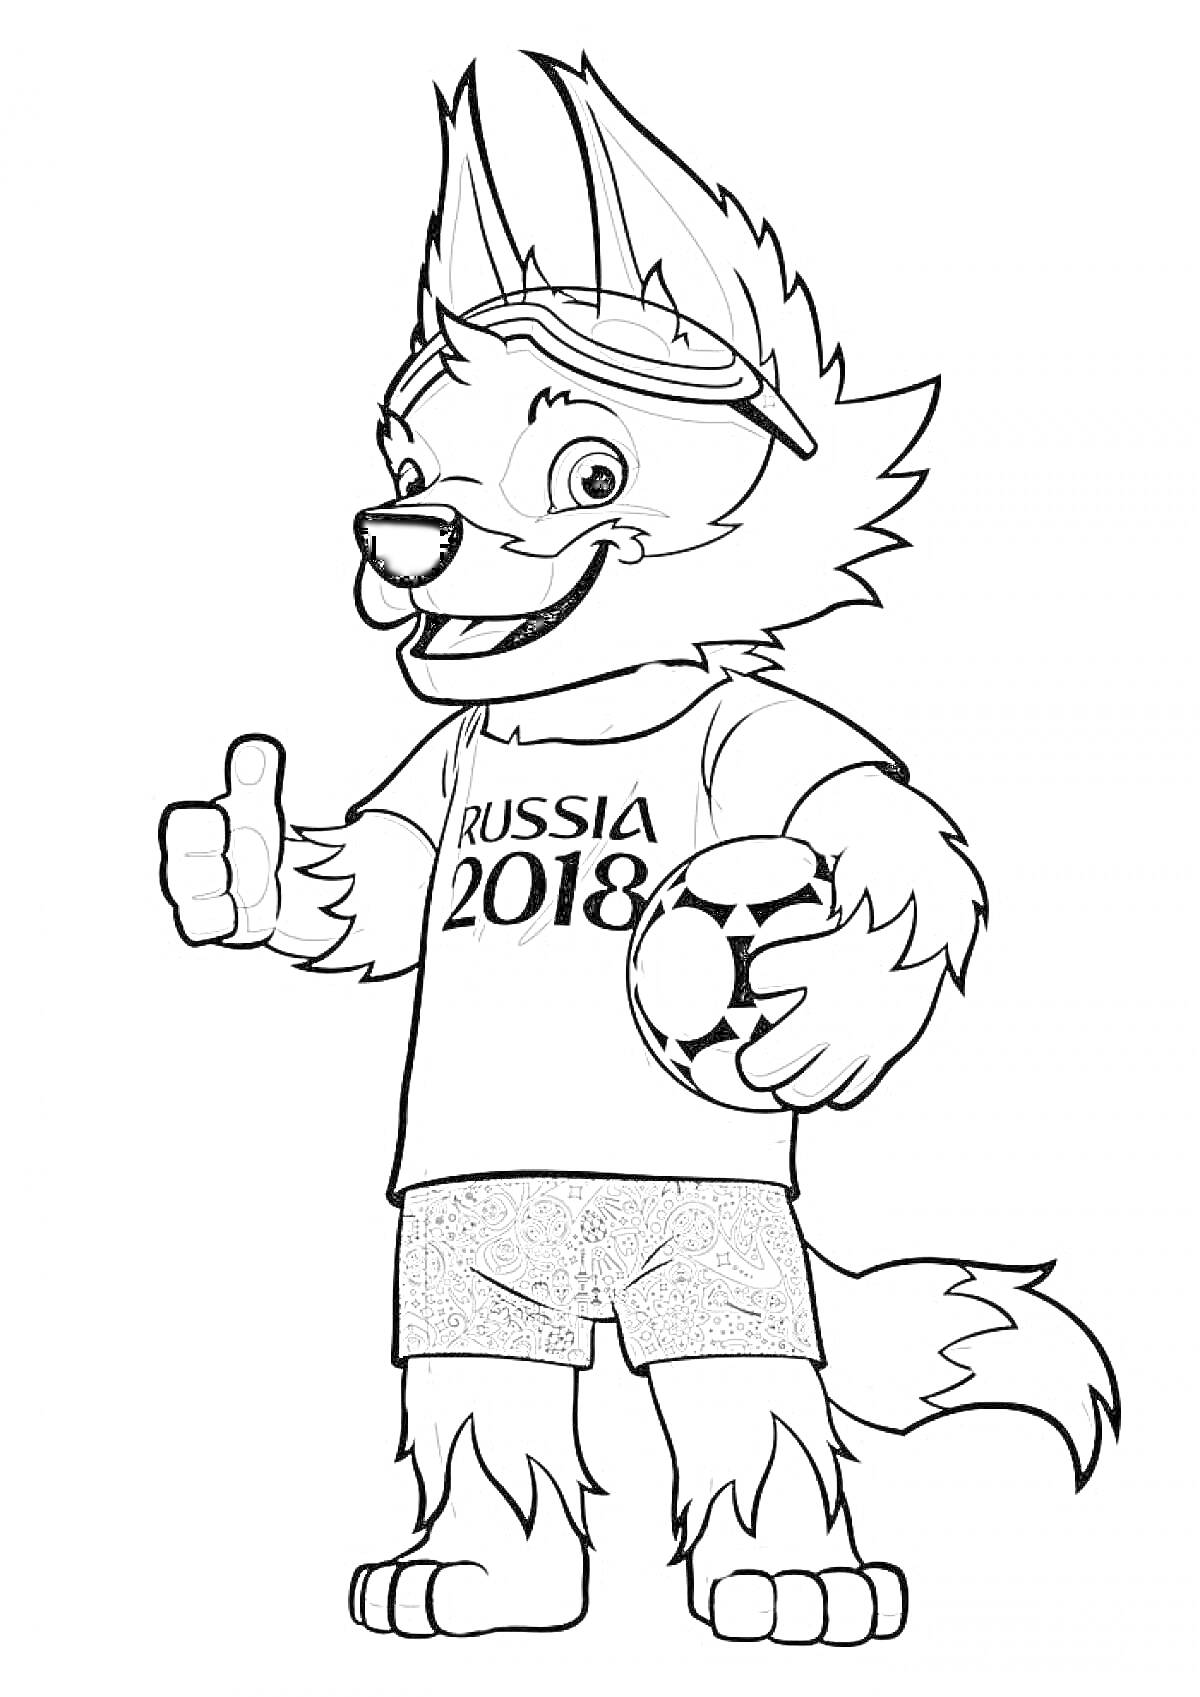 Раскраска Забивака — талисман Чемпионата мира по футболу 2018 года, одетый в футболку с надписью 